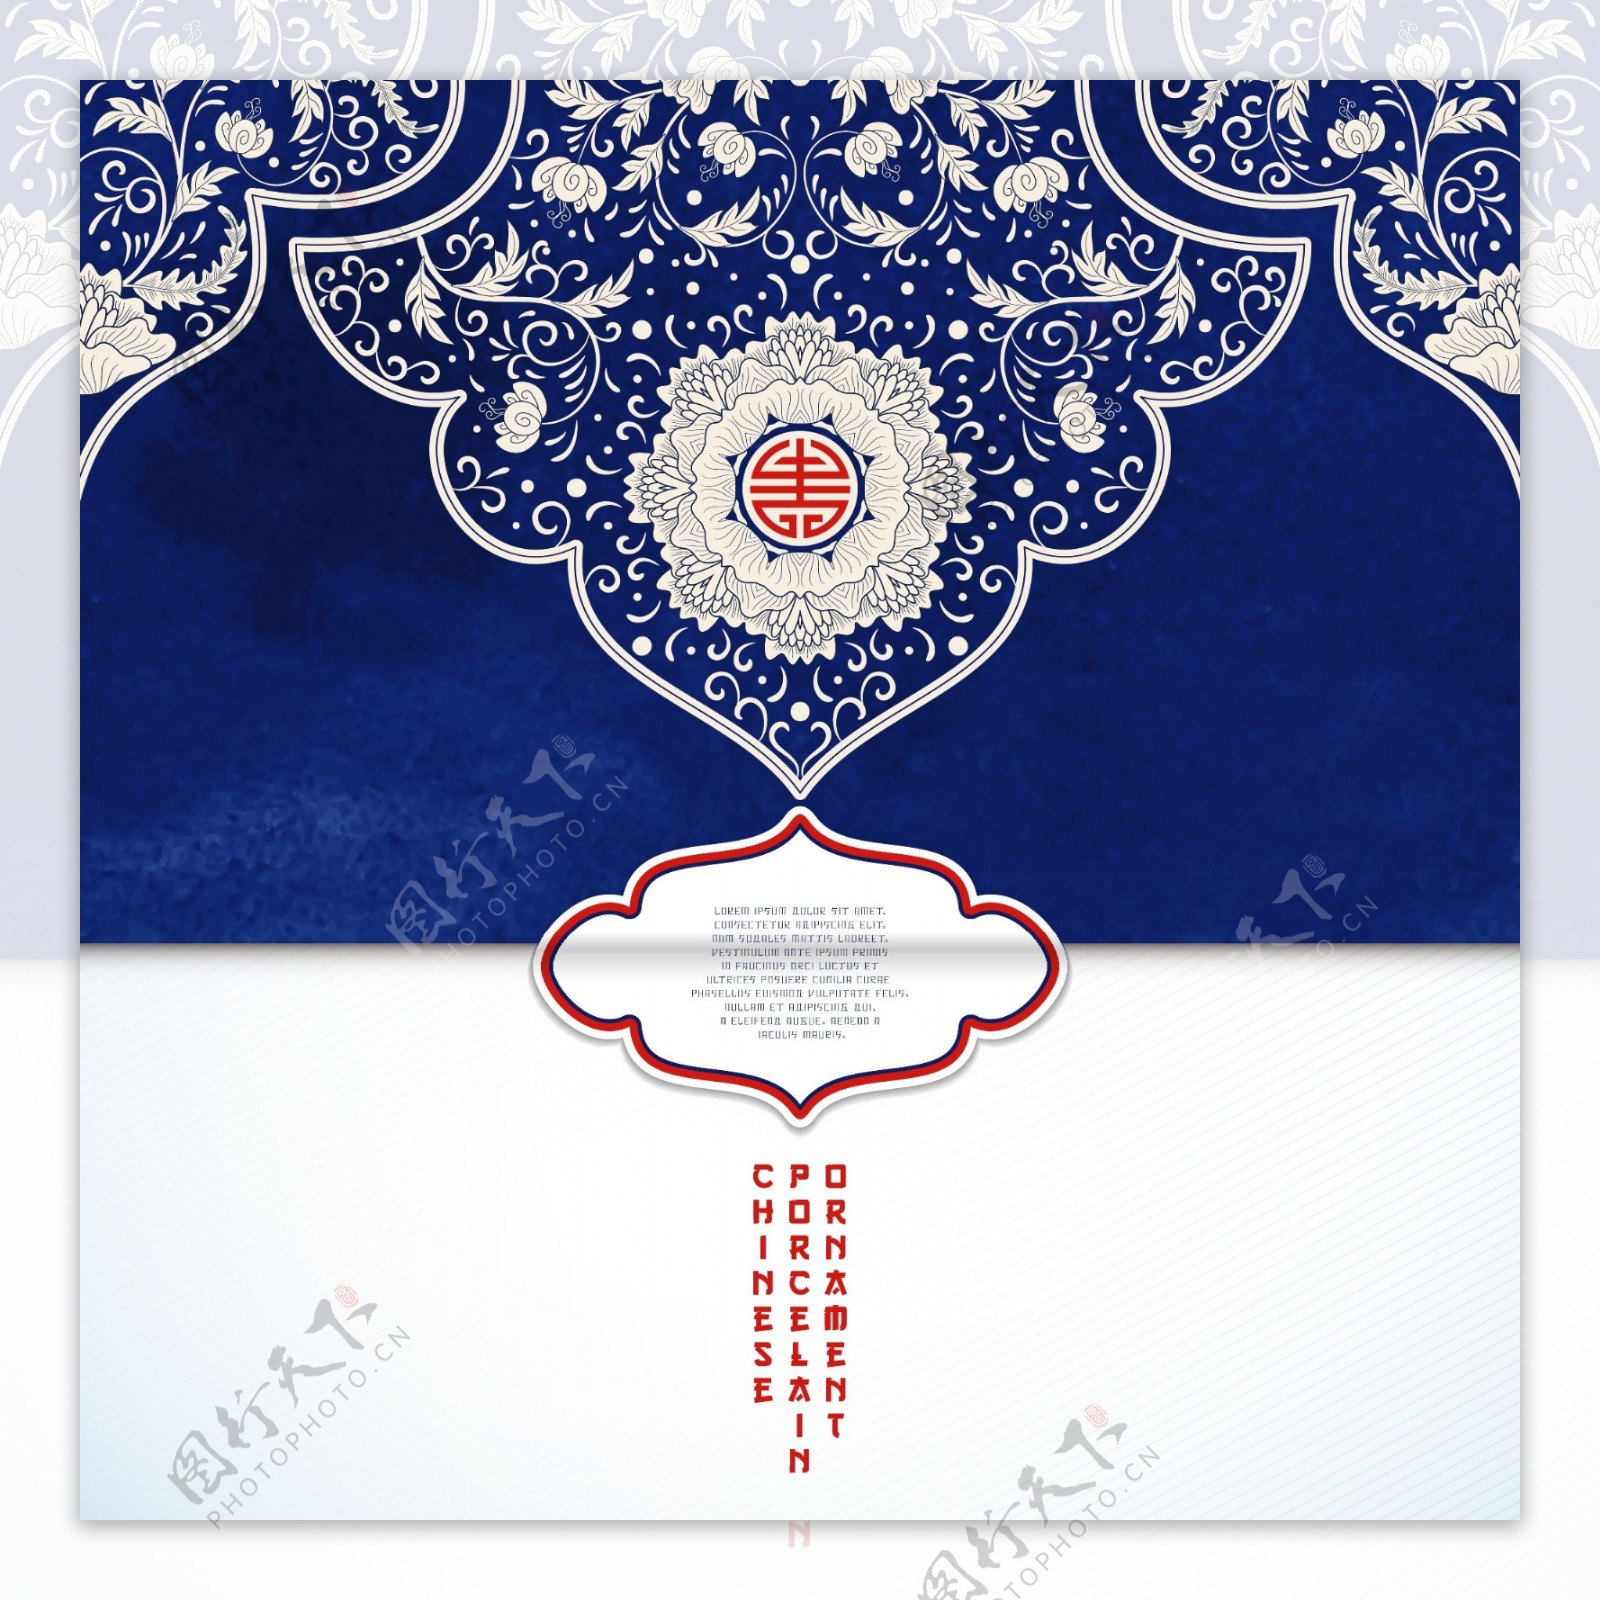 蓝色中国风青花瓷背景